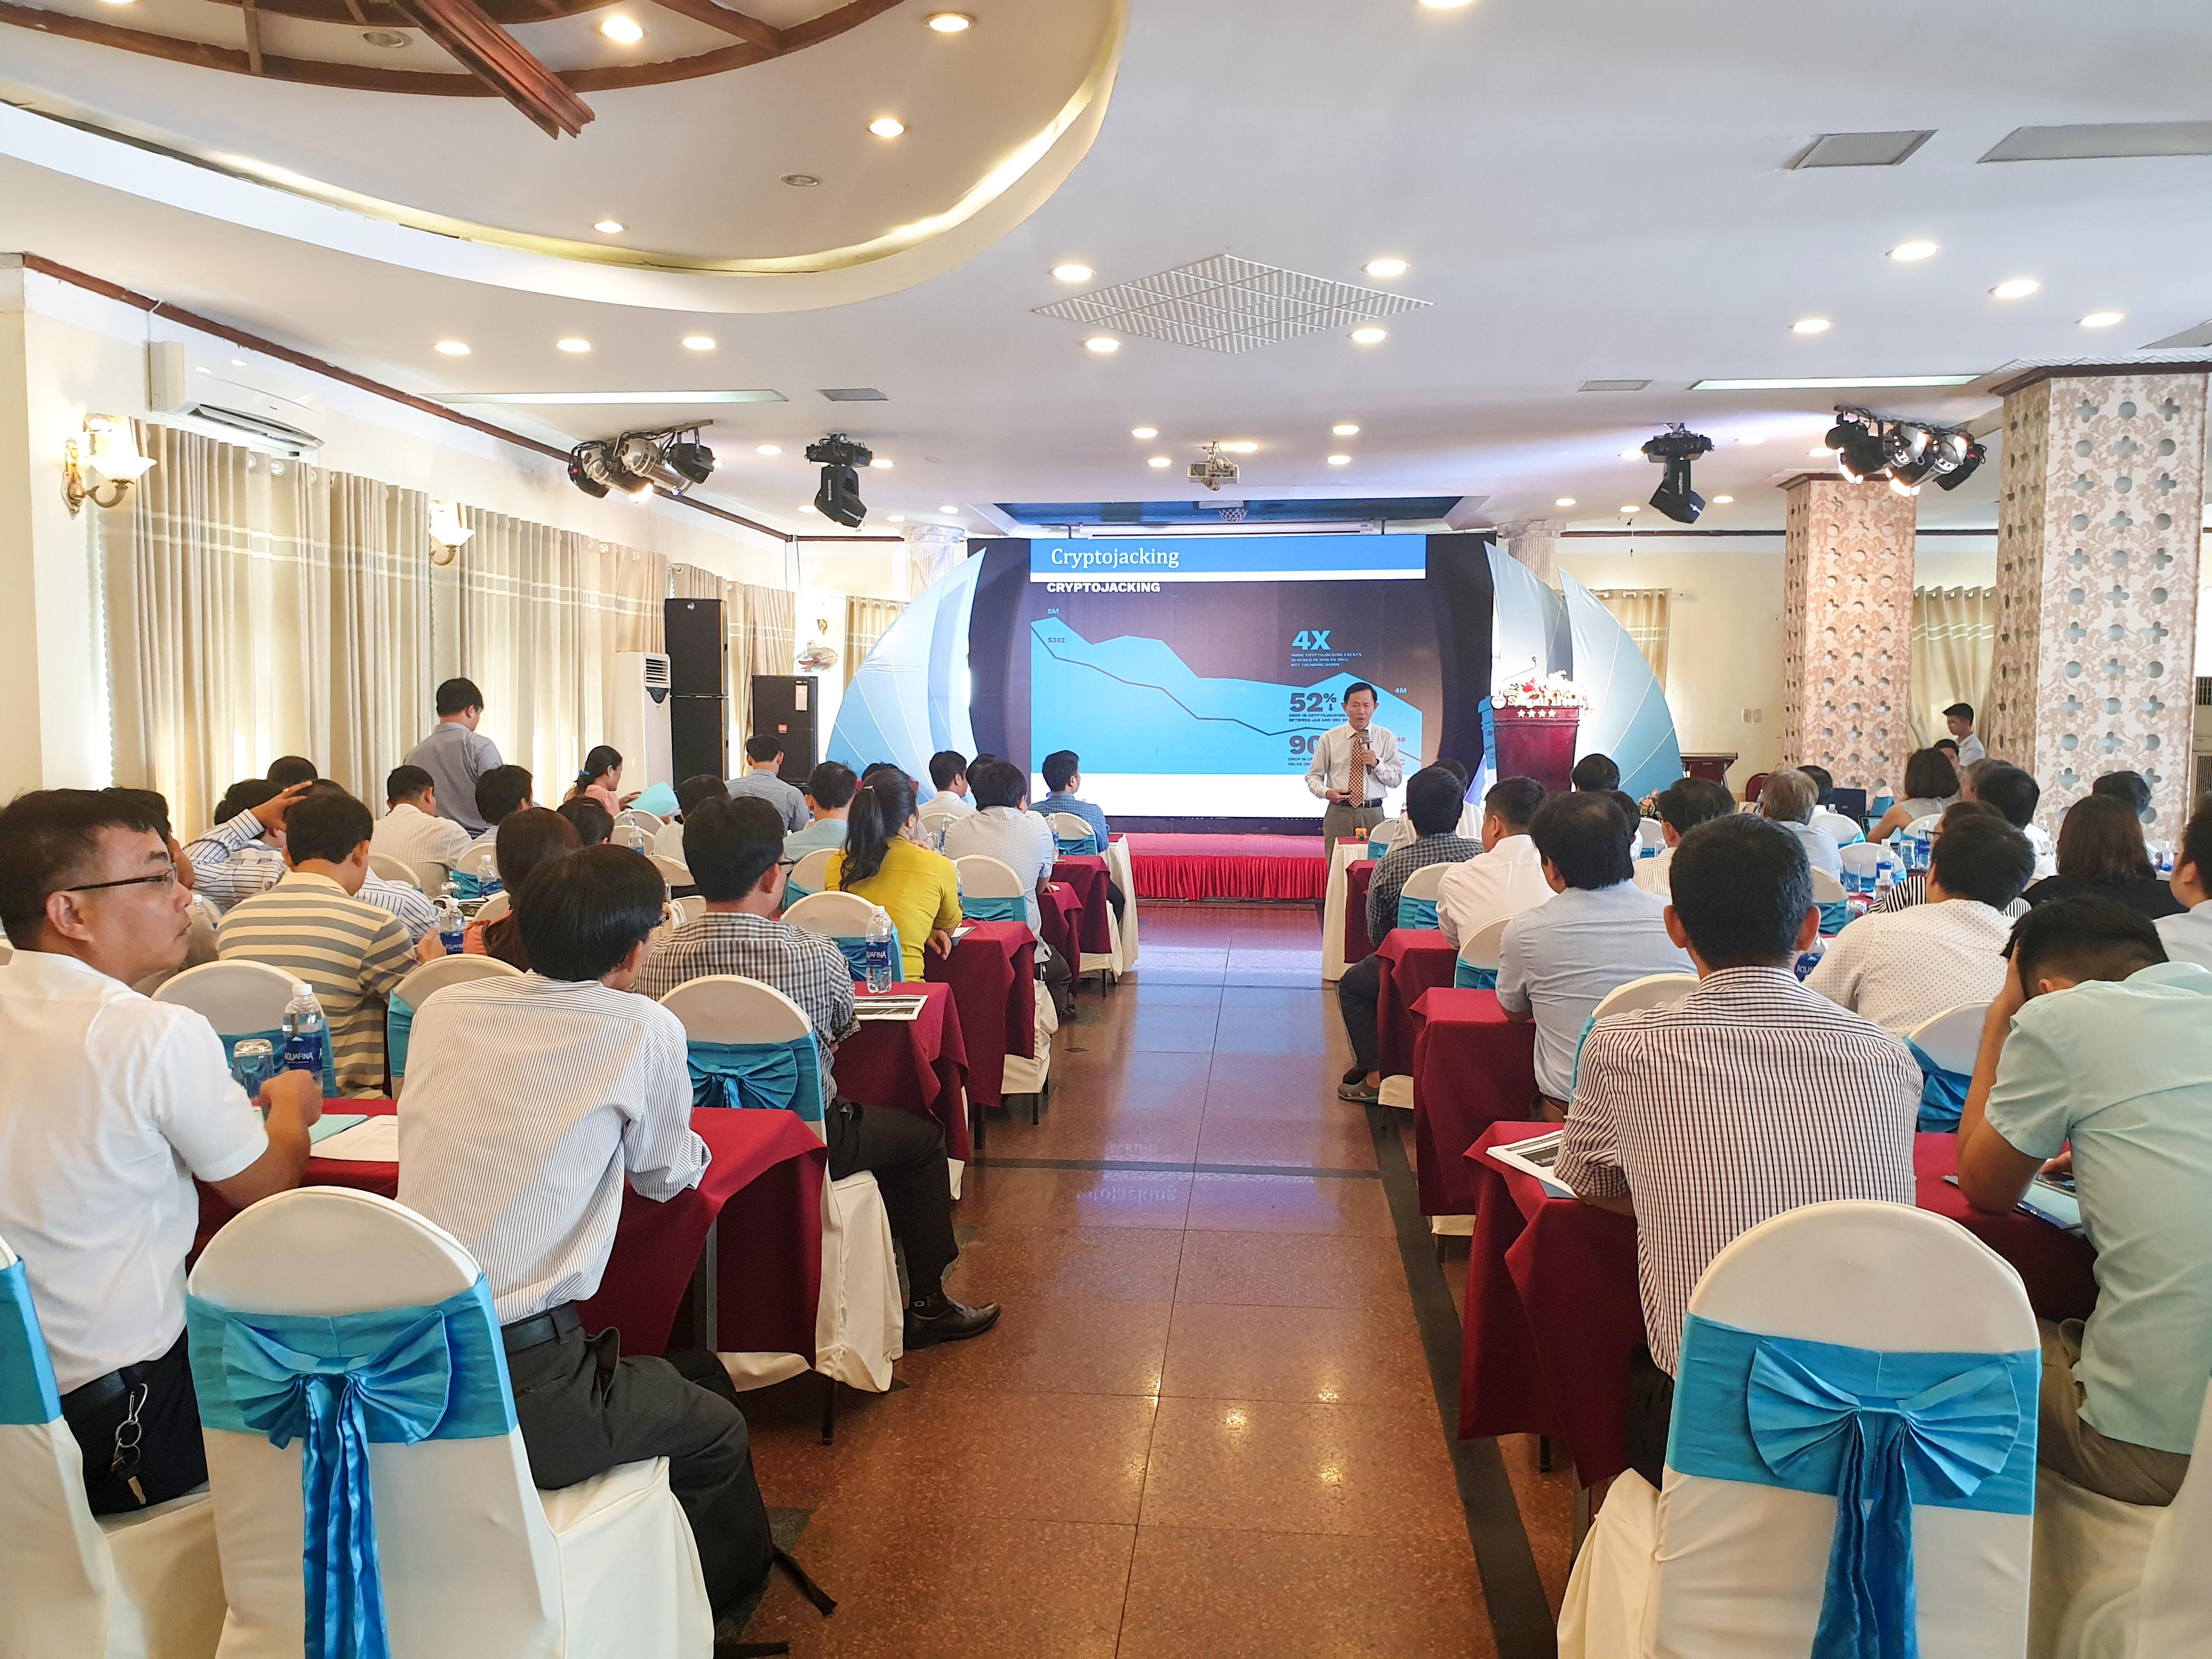 Saobacdau Telecom giới thiệu giải pháp VNPT Cloud - An toàn thông tin trong xây dựng chính phủ điện tử và đô thị thông minh tại Bình Định